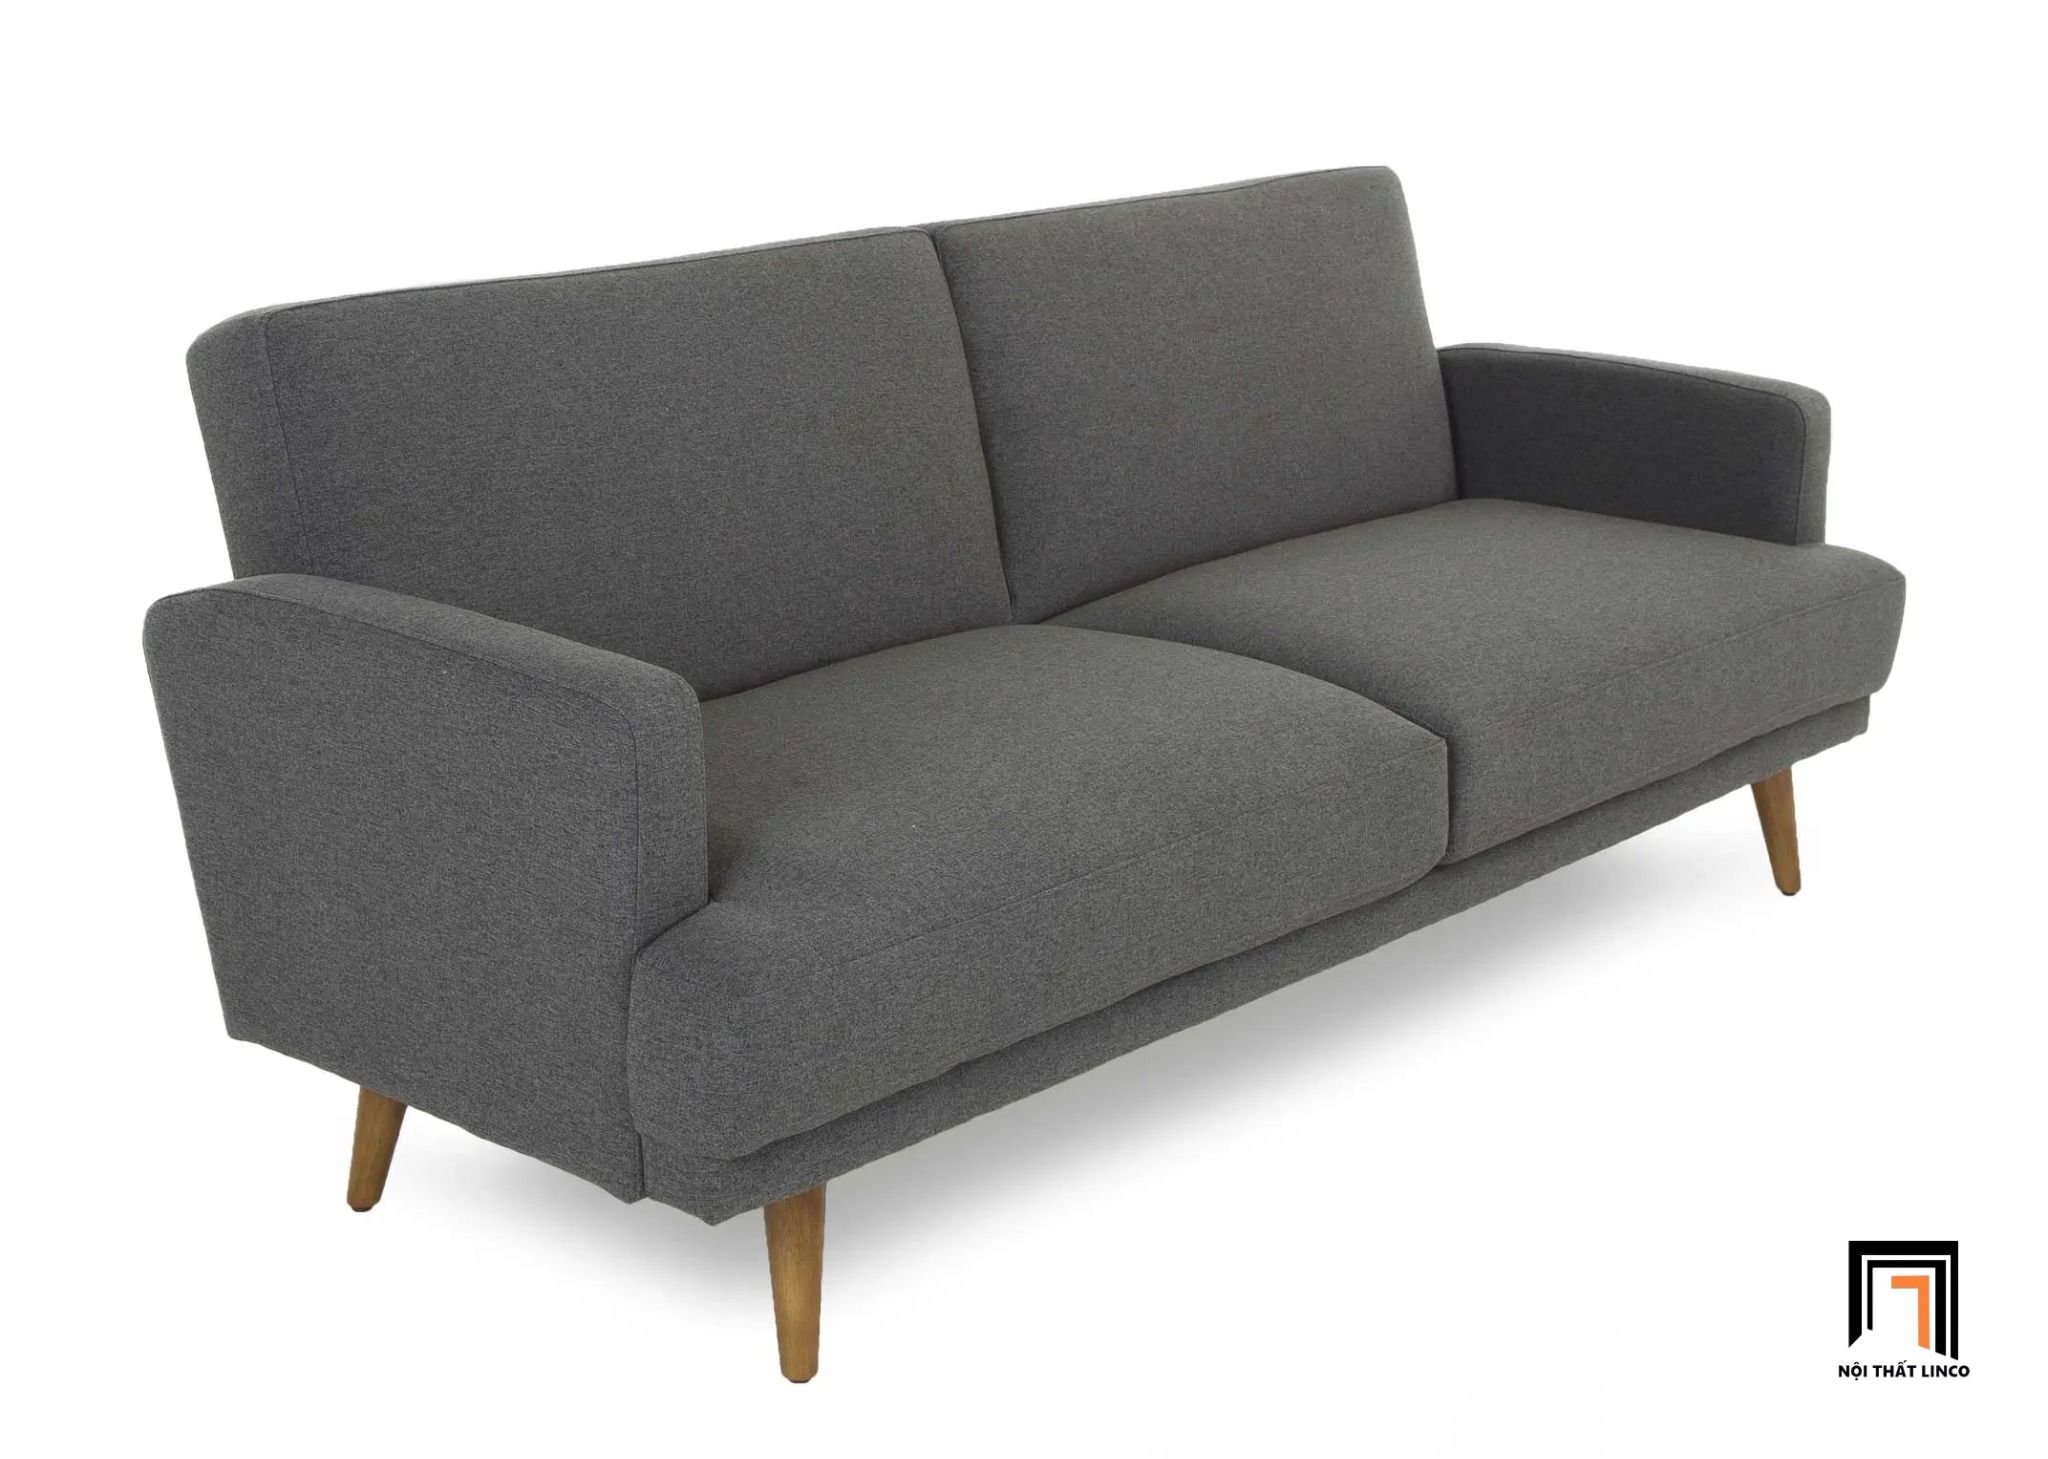  Ghế sofa băng giường nằm GB41 Grant 1m9 màu xám 